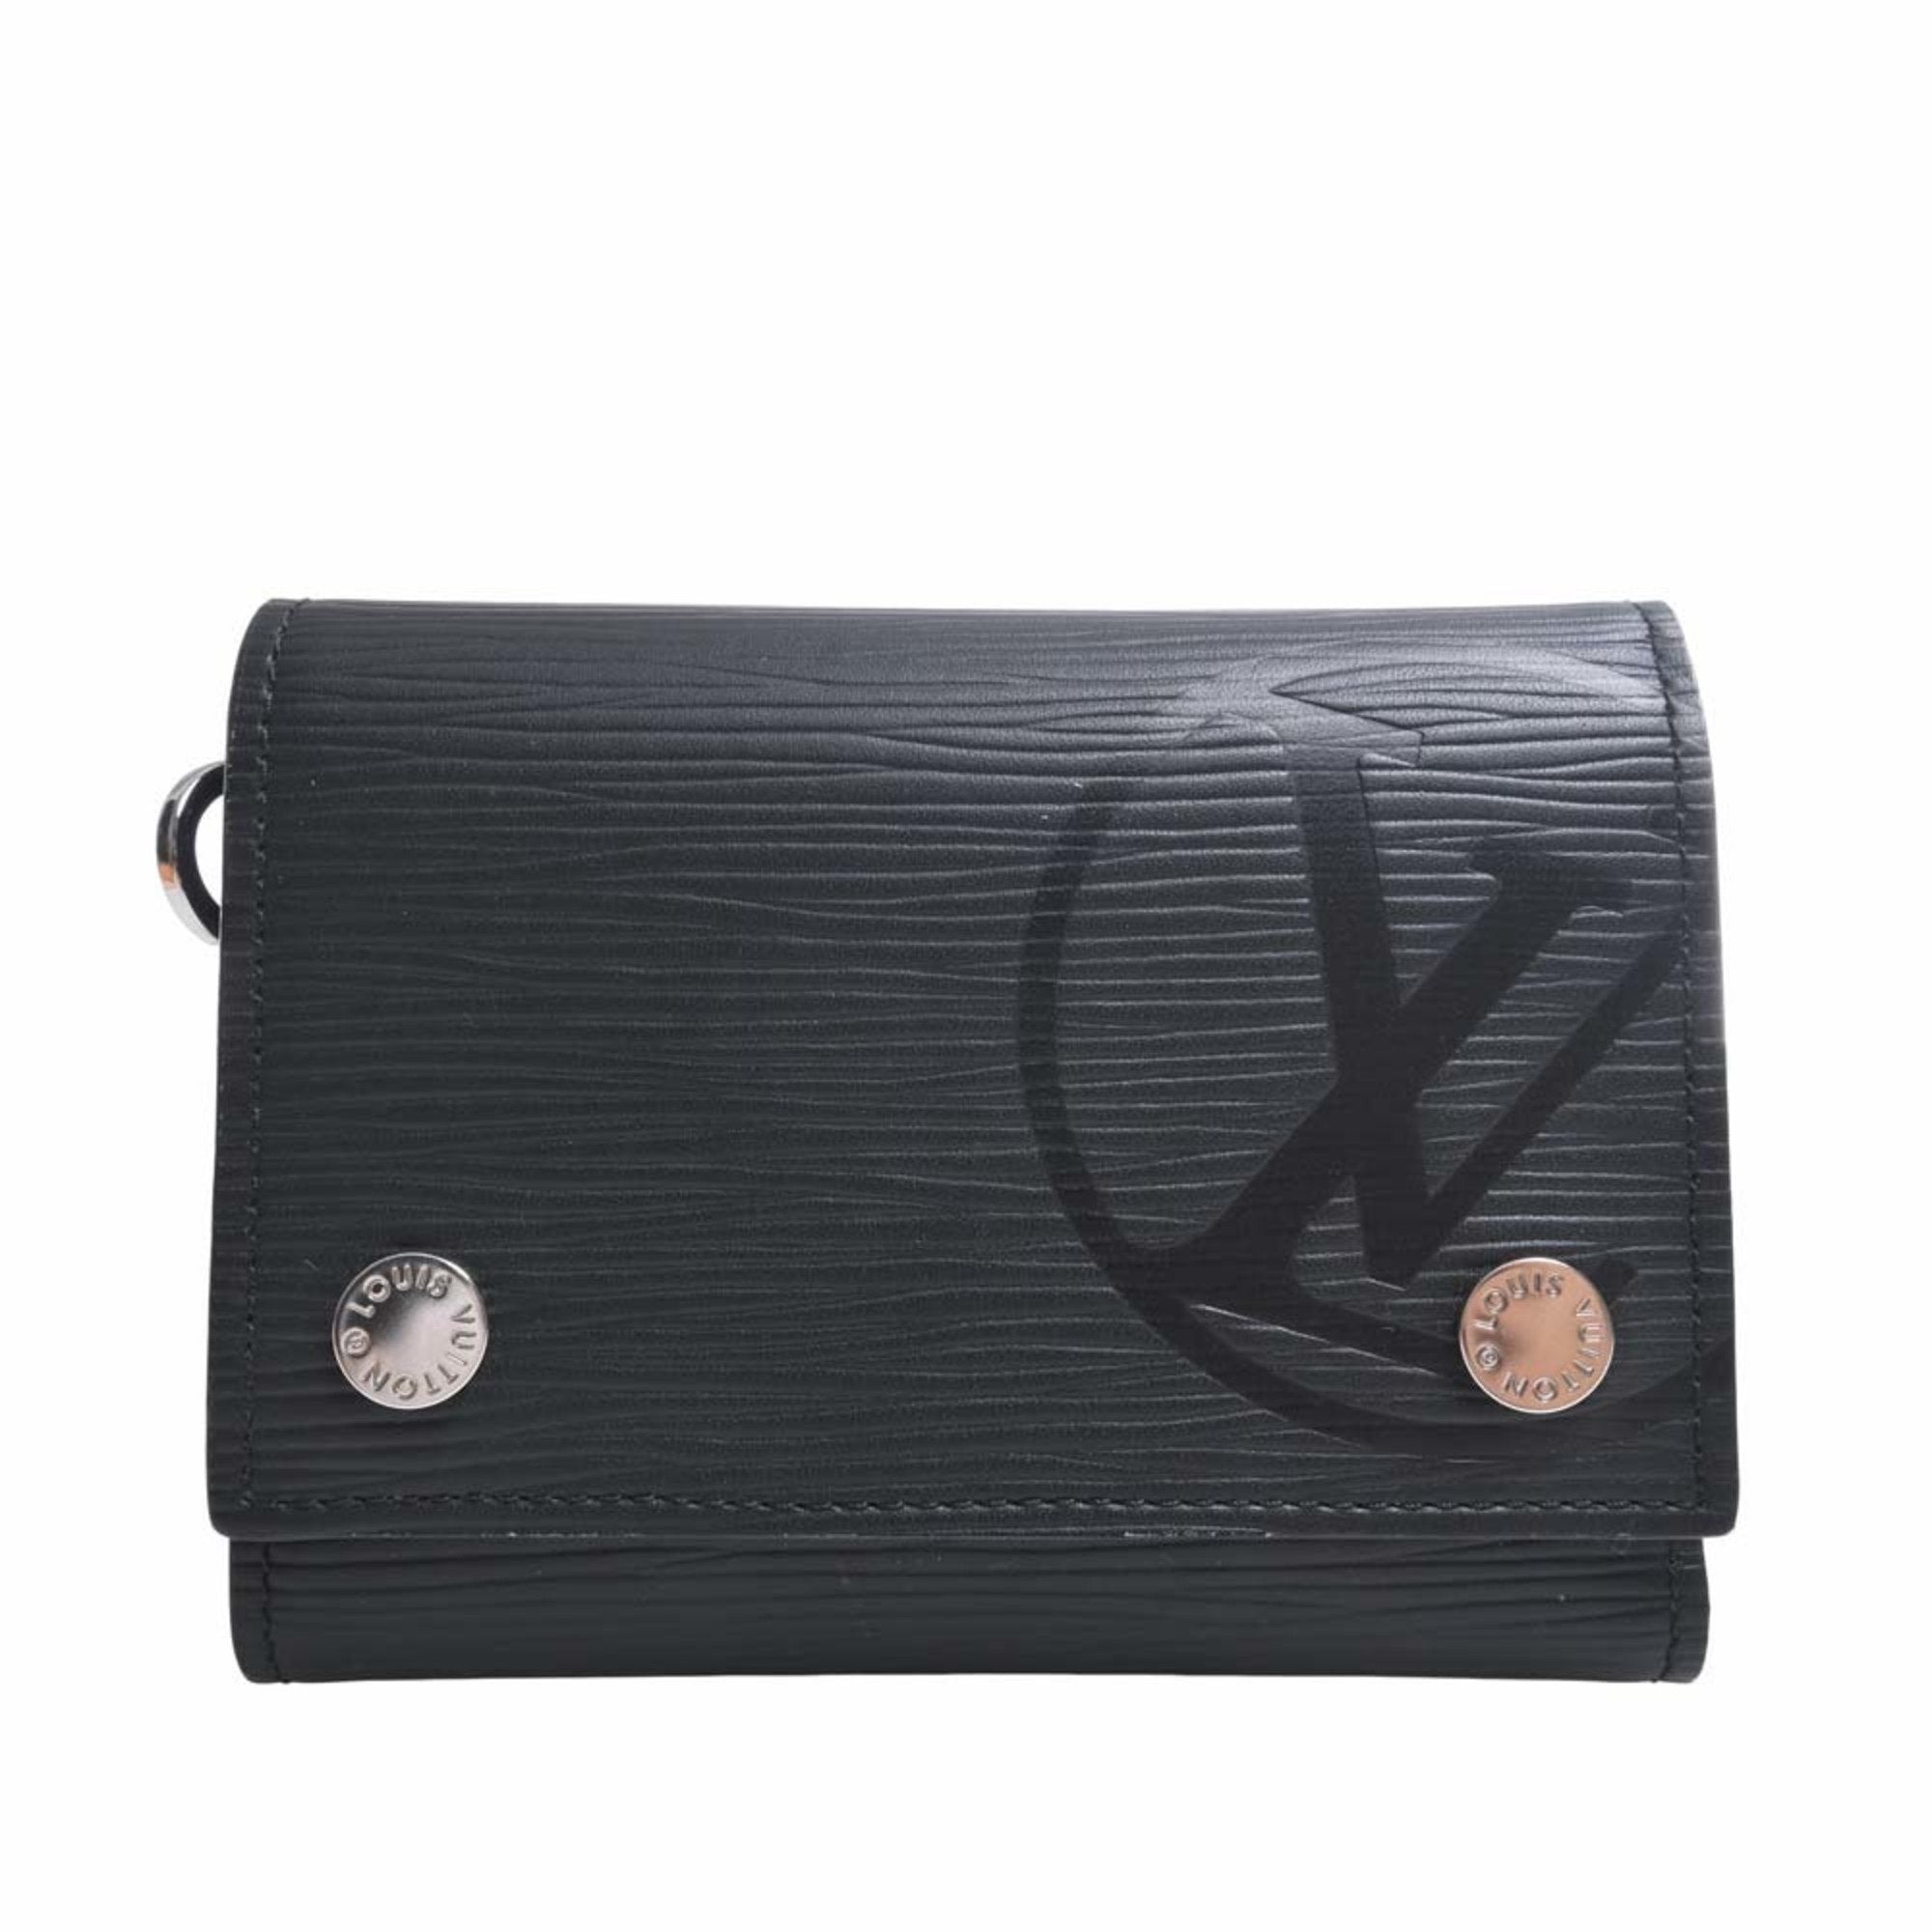 Louis Vuitton, Bags, Louis Vuittonauth Epi Chain Compact Wallet M6358 Mens  Wallet Trifold Noir